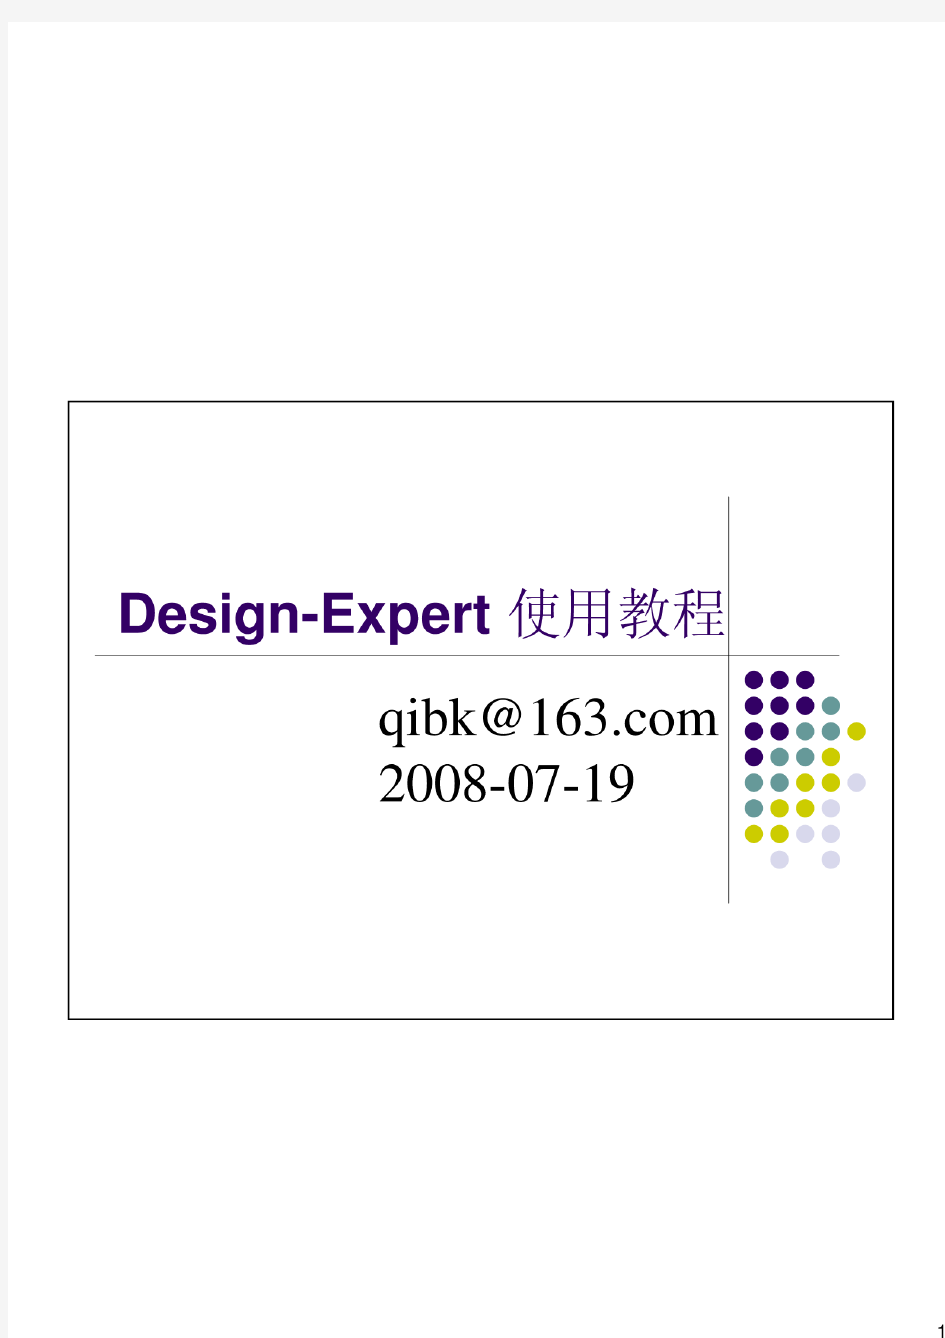 Design-Expert响应面分析软件使用教程